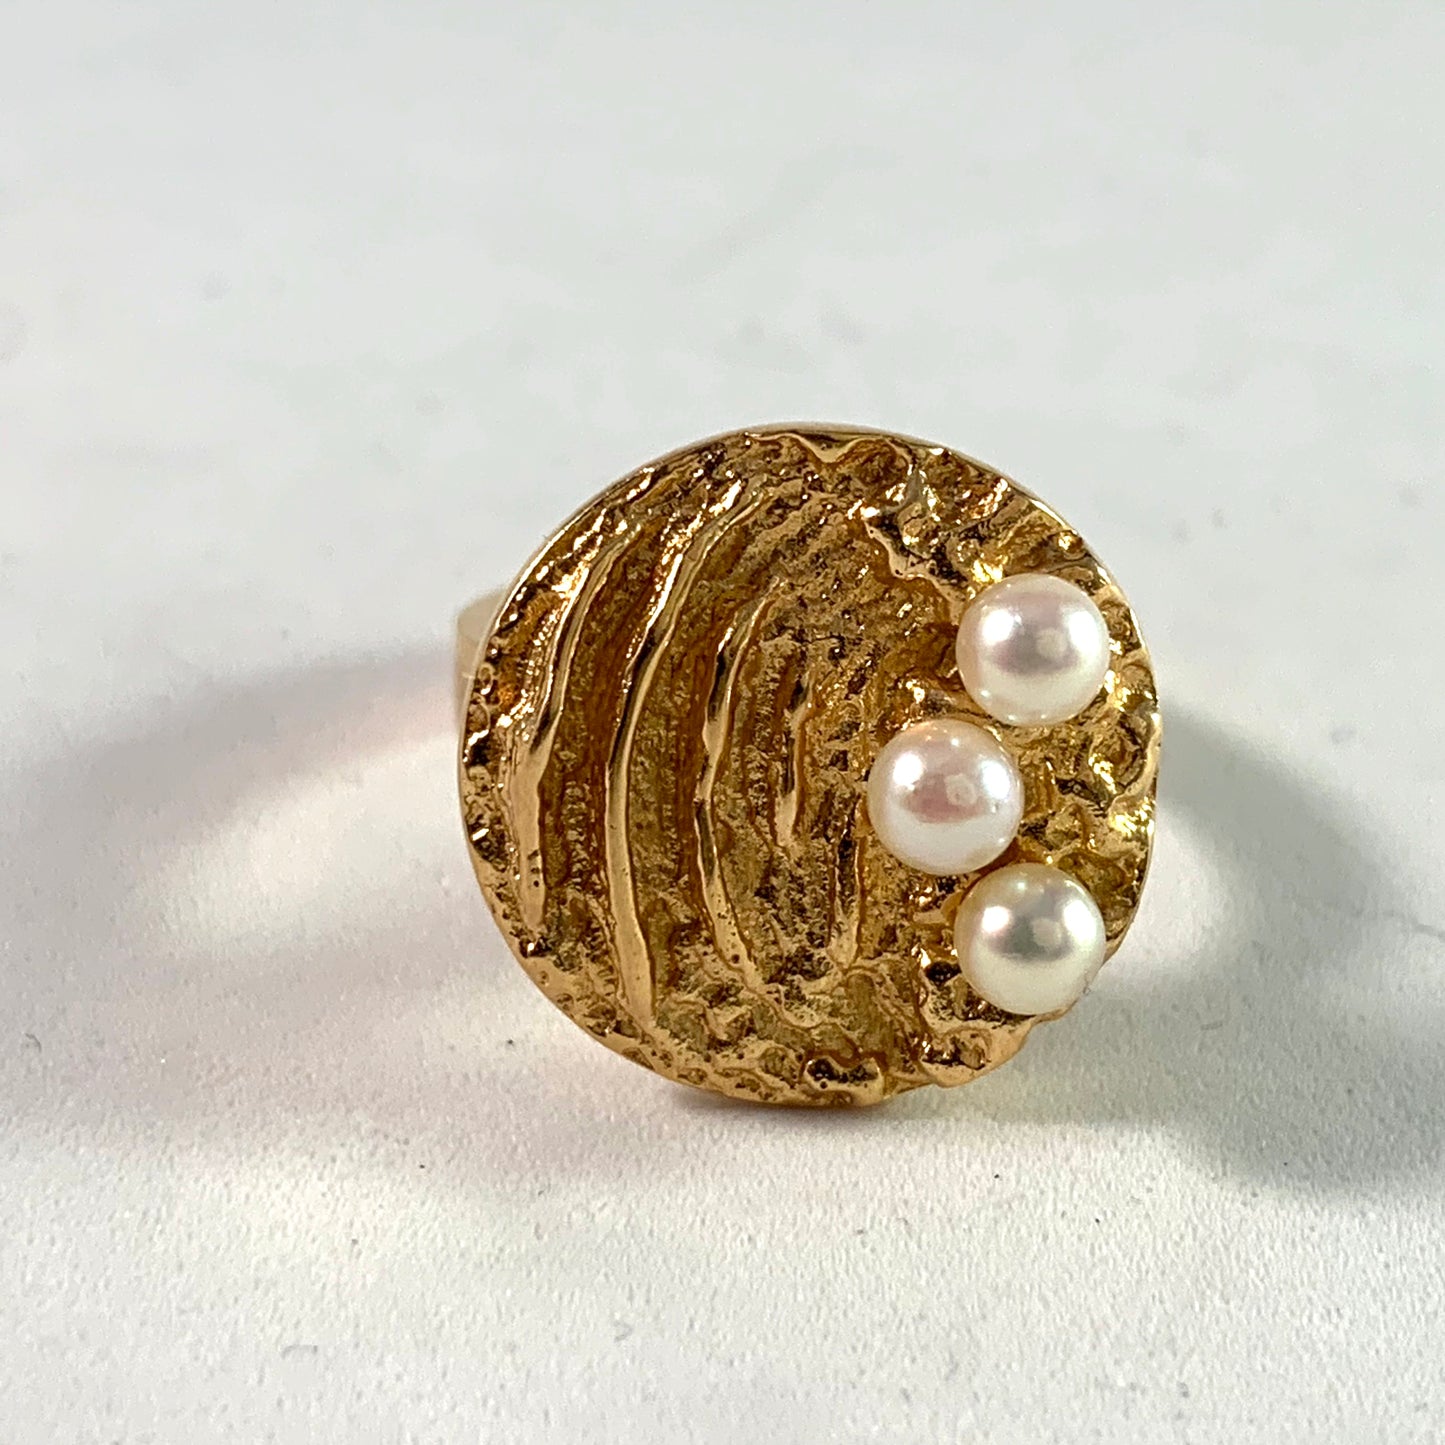 Liedholm for Ateljé Candra 1968 Modernist 18k Gold Pearl Ring. Signed